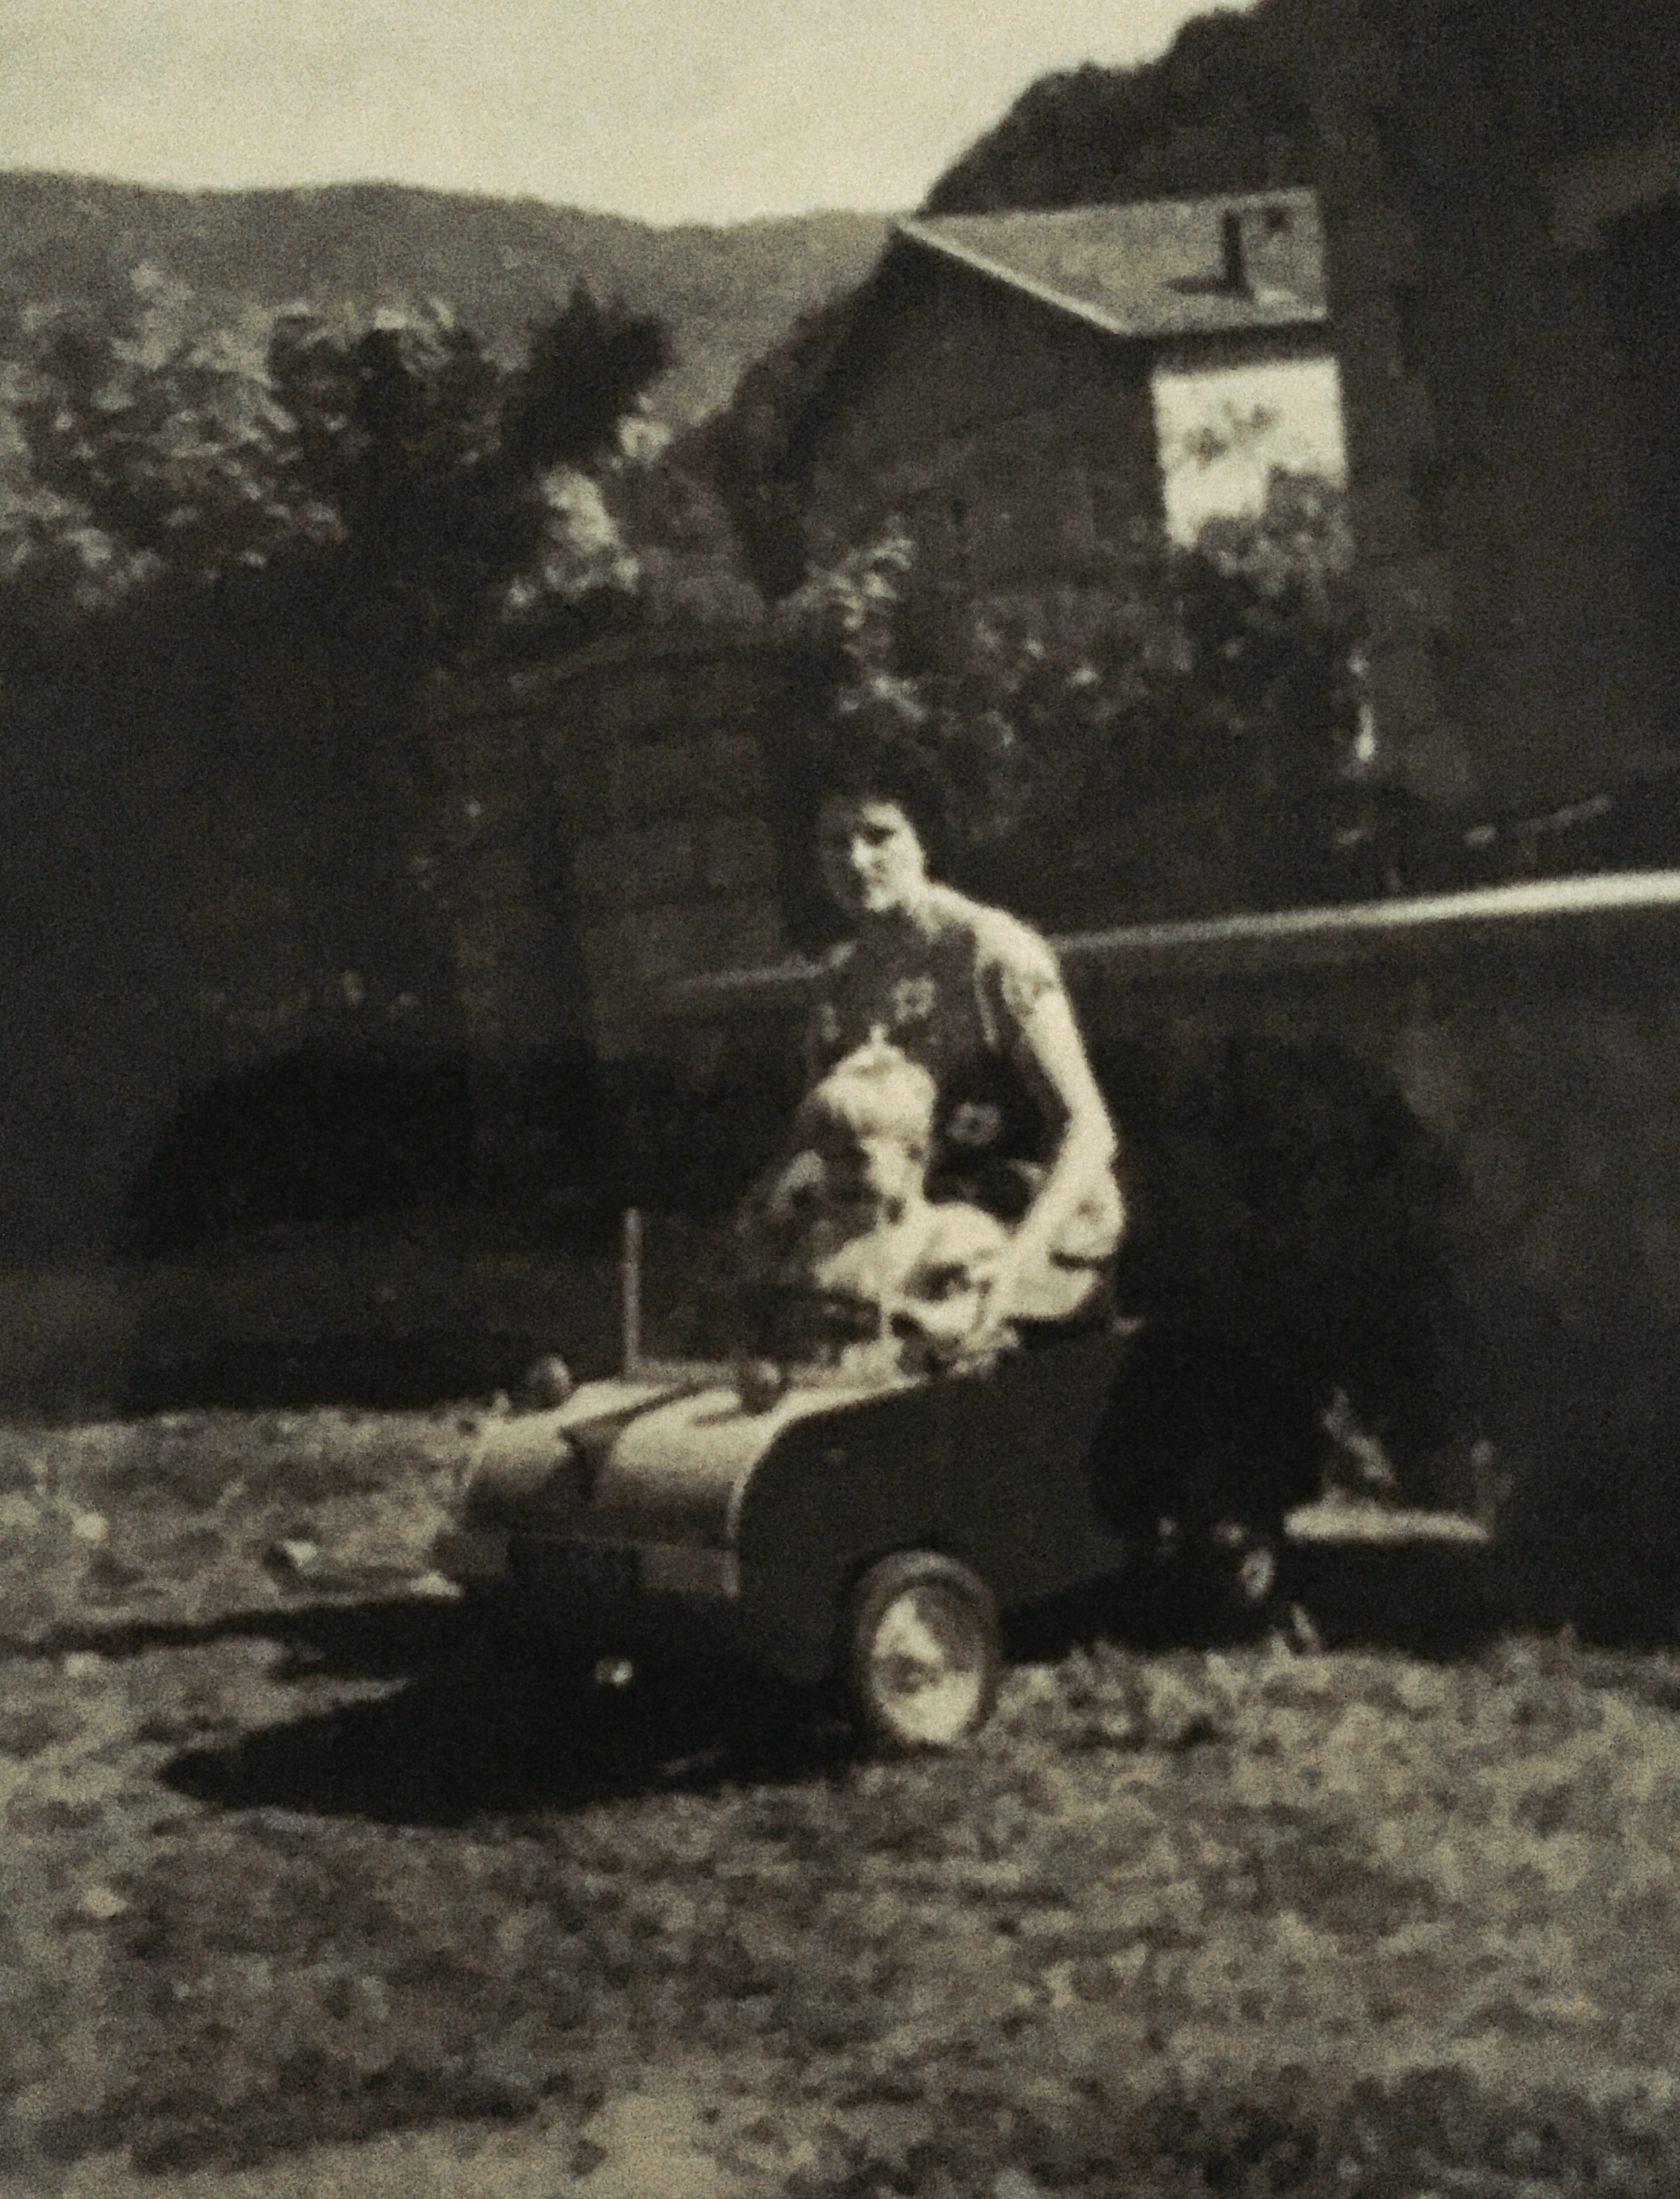 La toute première et unique voiture de ma vie. Voiture à pédale en bois fabriquée par mon papa Jacques Gaillard. Année 1952 à Savignac les Ormeaux dans l’ariège (09)